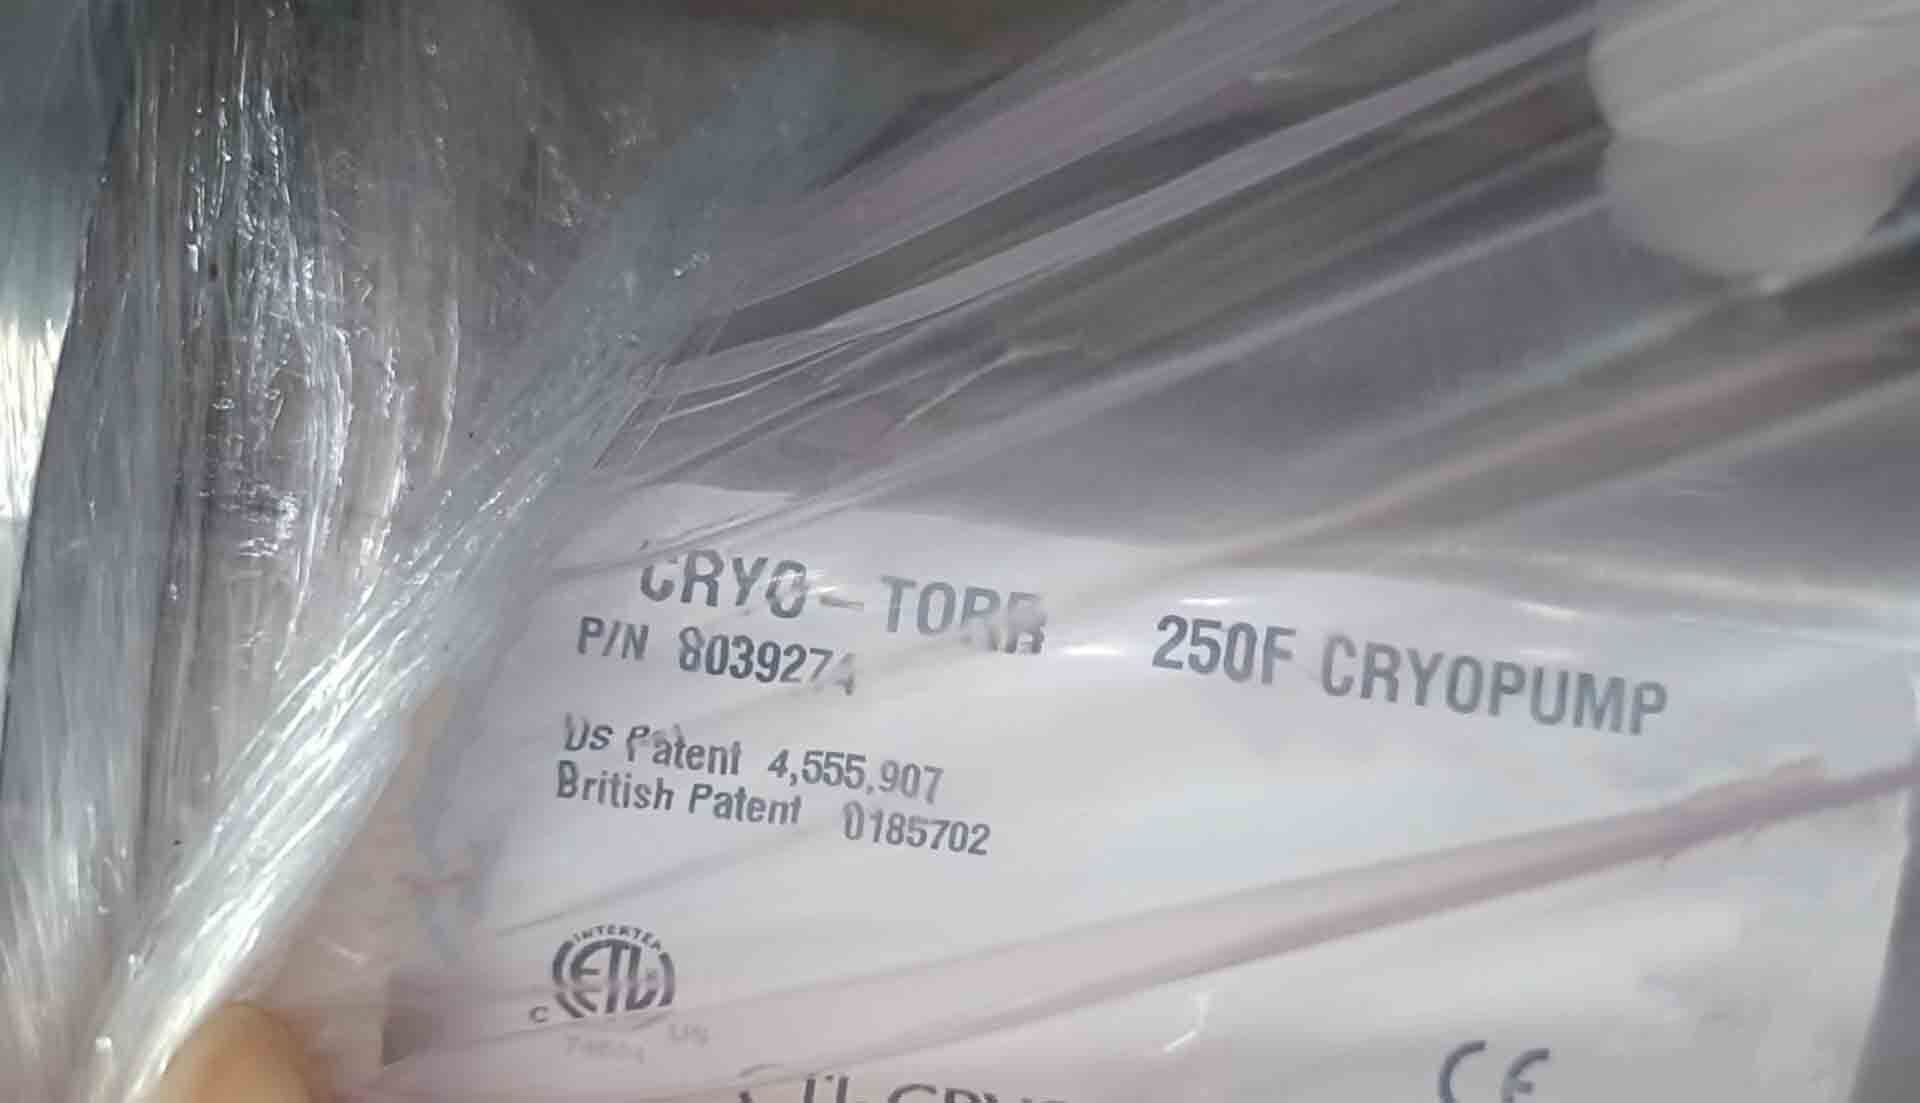 圖為 已使用的 CTI-CRYOGENICS Cryo-Torr 250F 待售